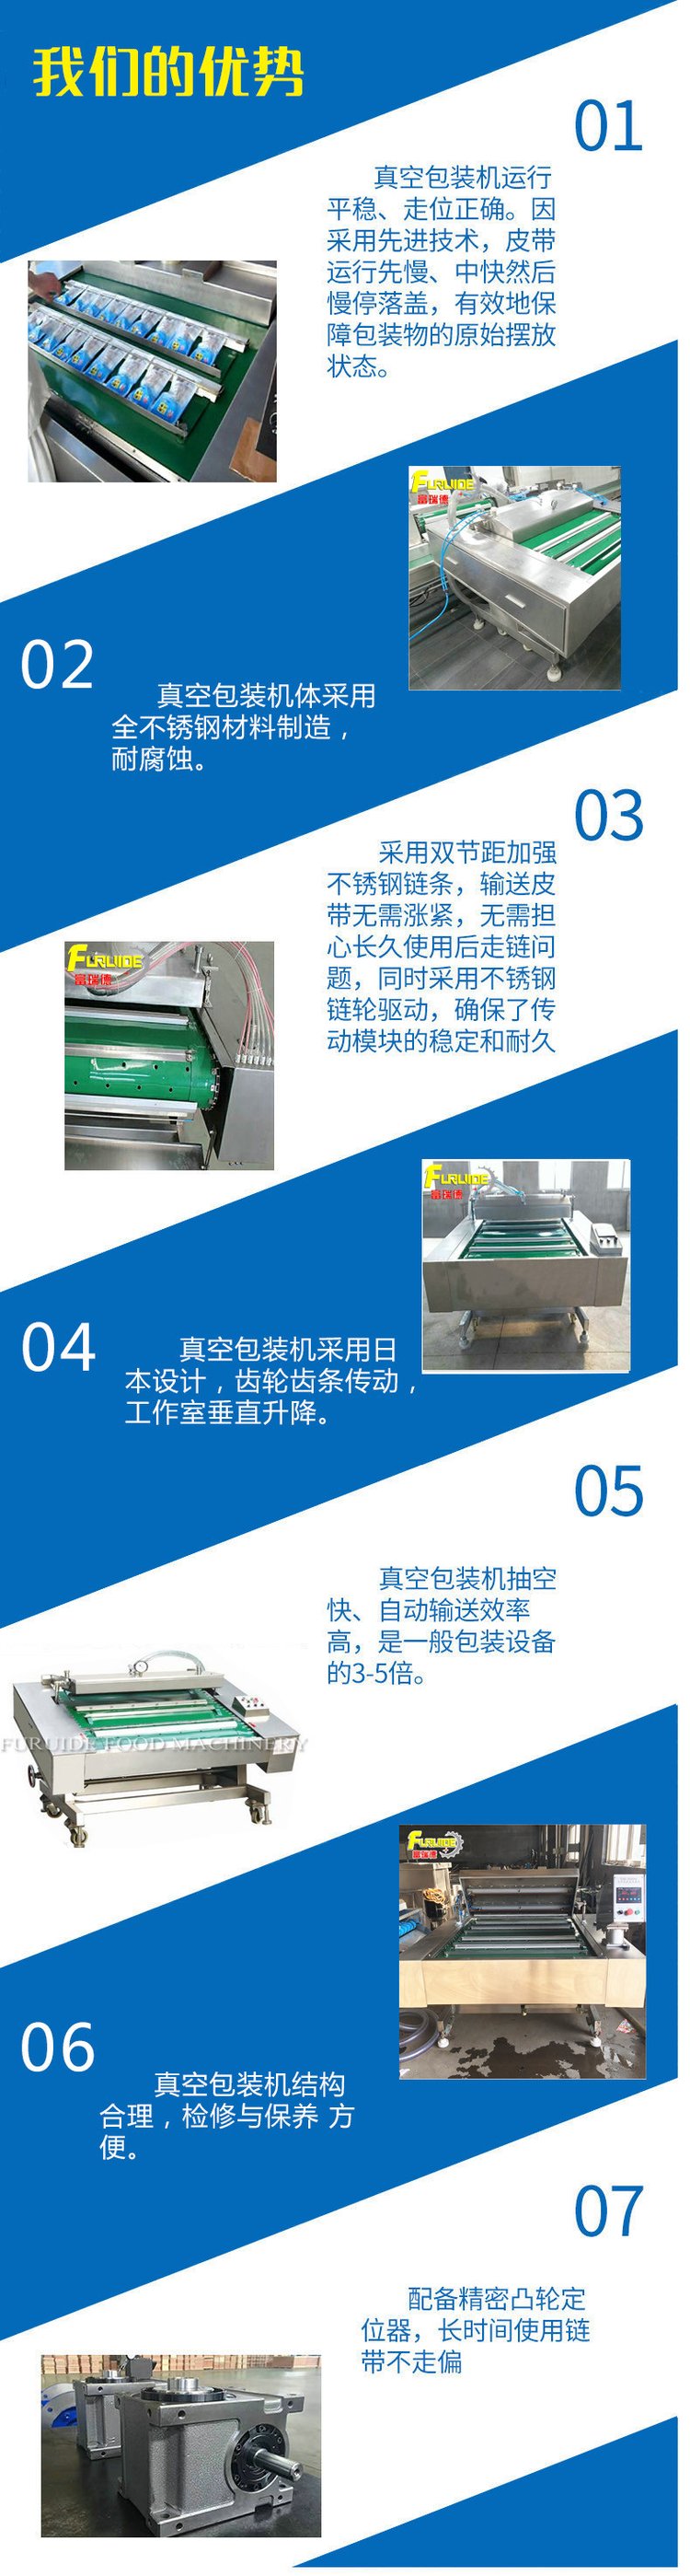 Beef granule tensile film packaging equipment Dongdu multi-function vacuum sealing machine Continuous braised duck neck packaging machine